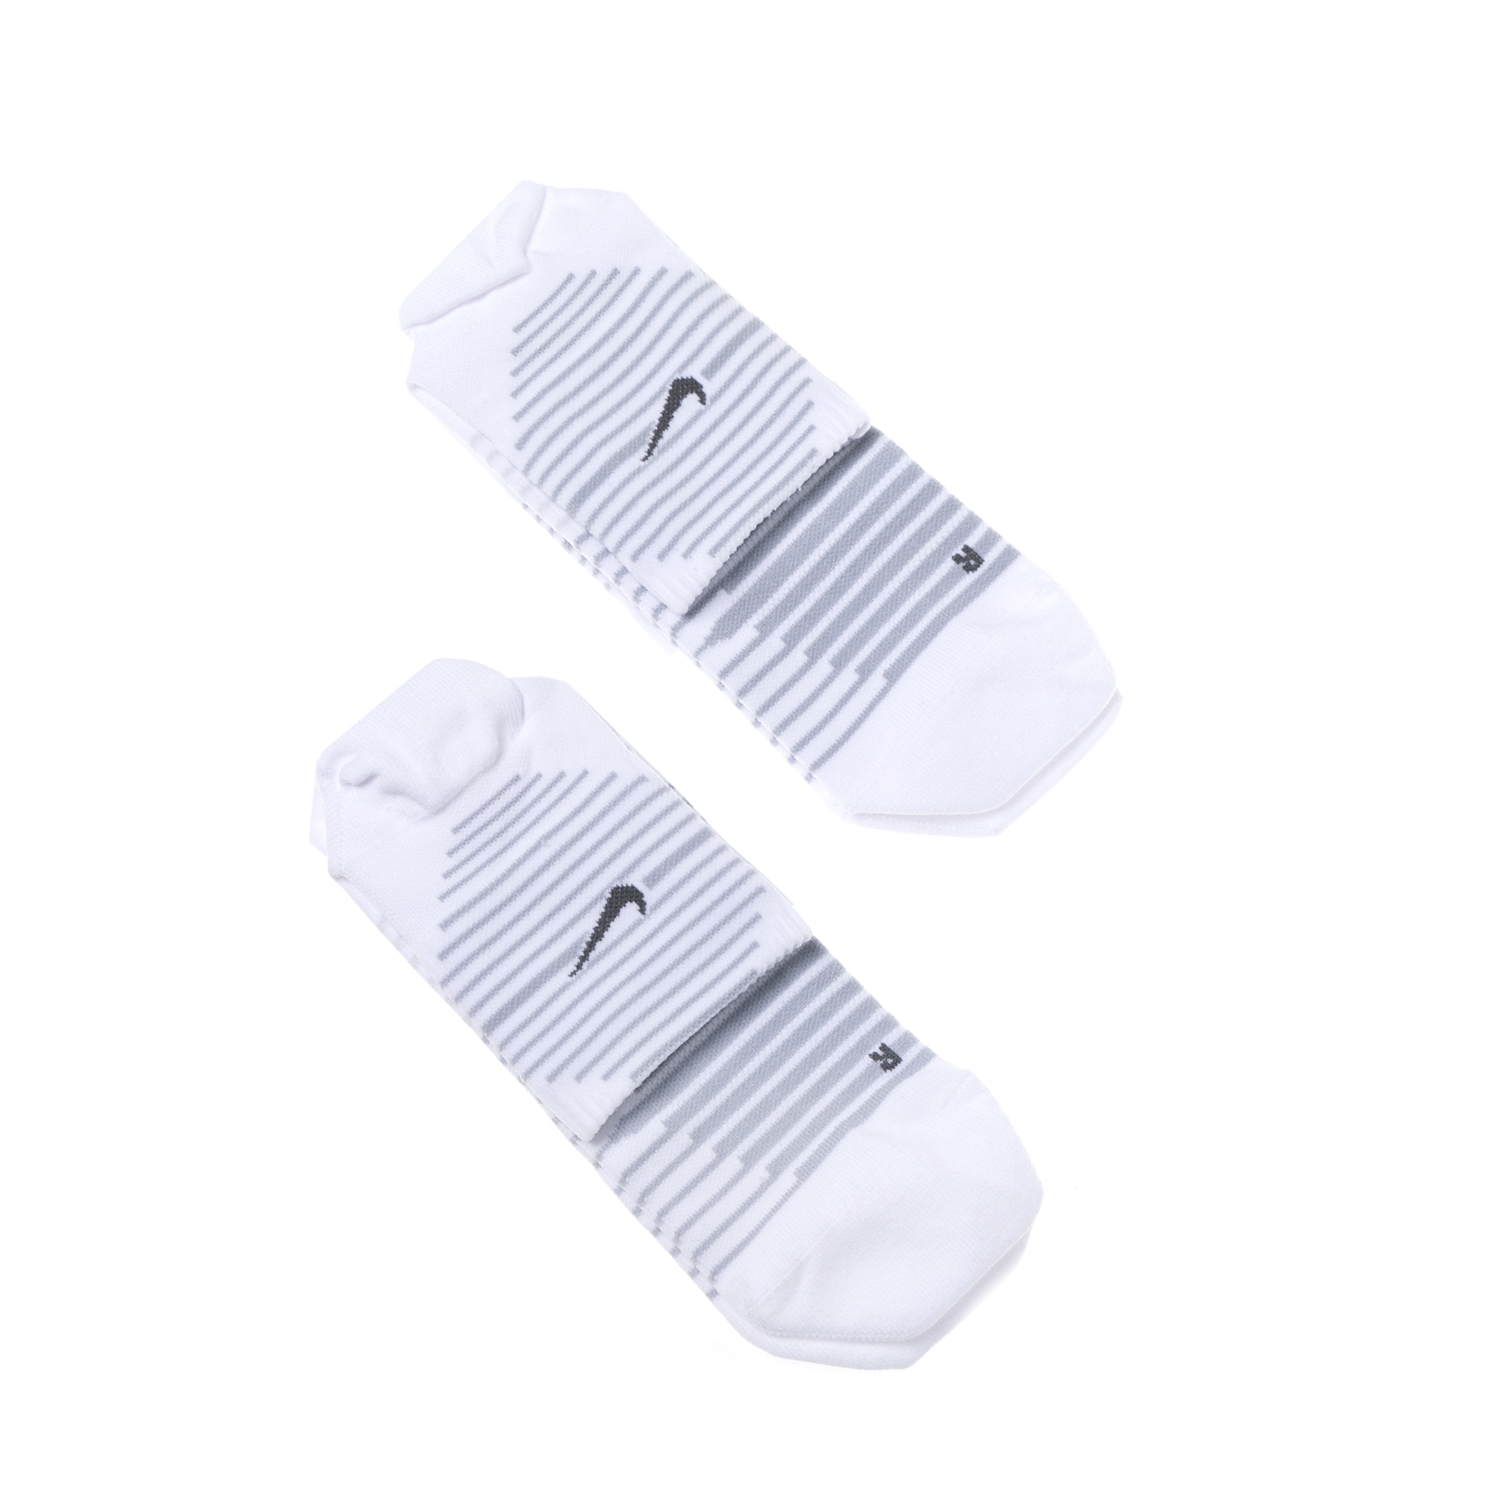 NIKE - Σετ αθλητικές κάλτσες NΙKΕ PERF LTWT άσπρες Γυναικεία/Αξεσουάρ/Κάλτσες